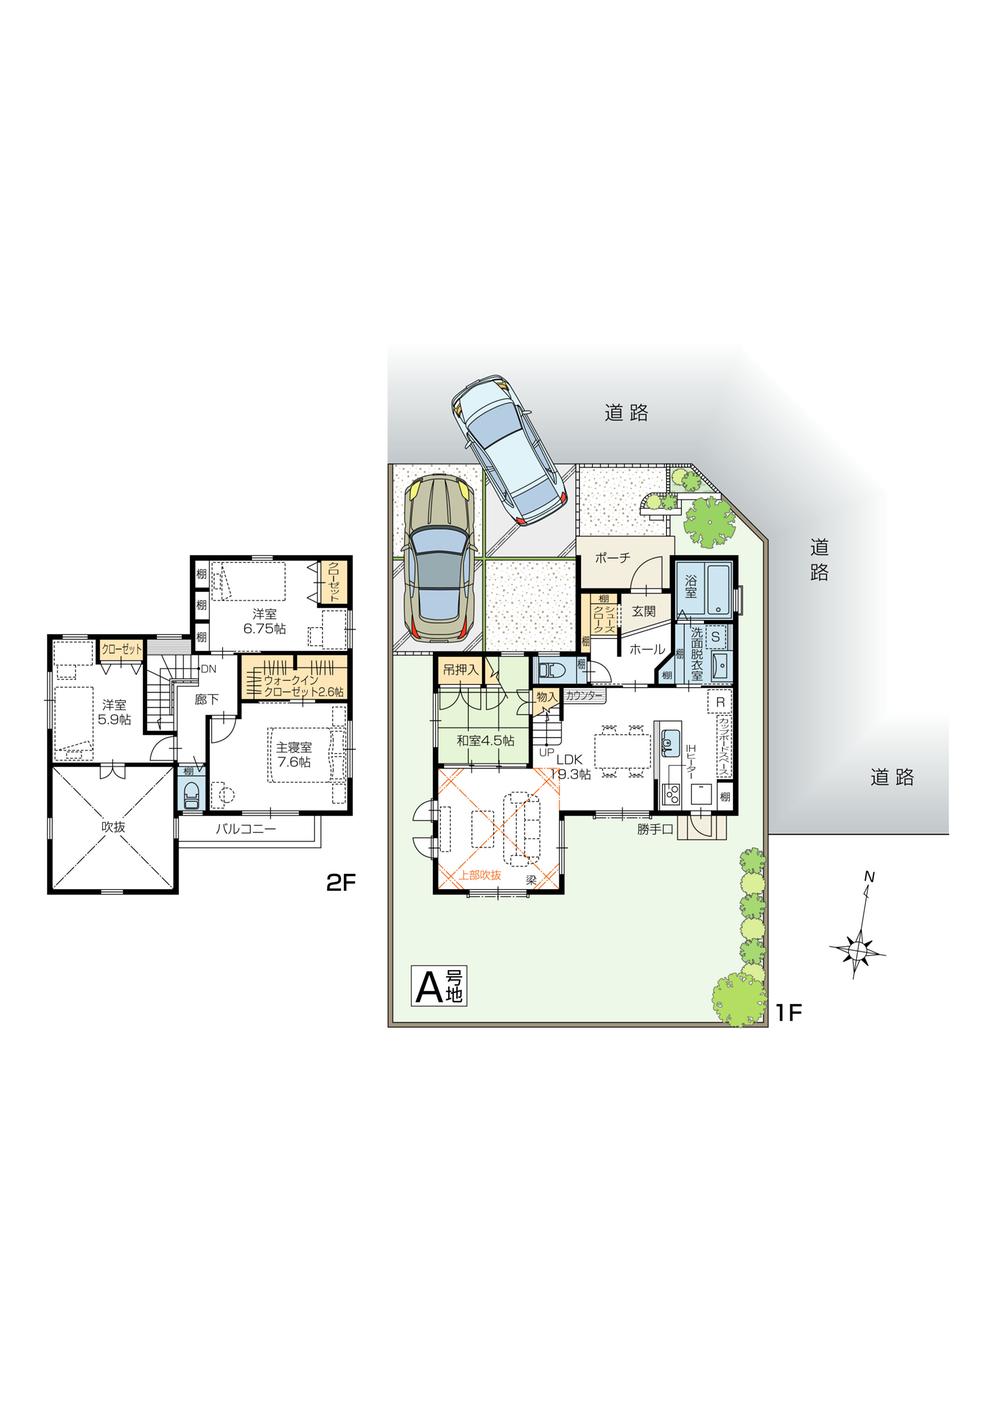 Floor plan. (A Building), Price 29.4 million yen, 4LDK, Land area 169.9 sq m , Building area 106.2 sq m